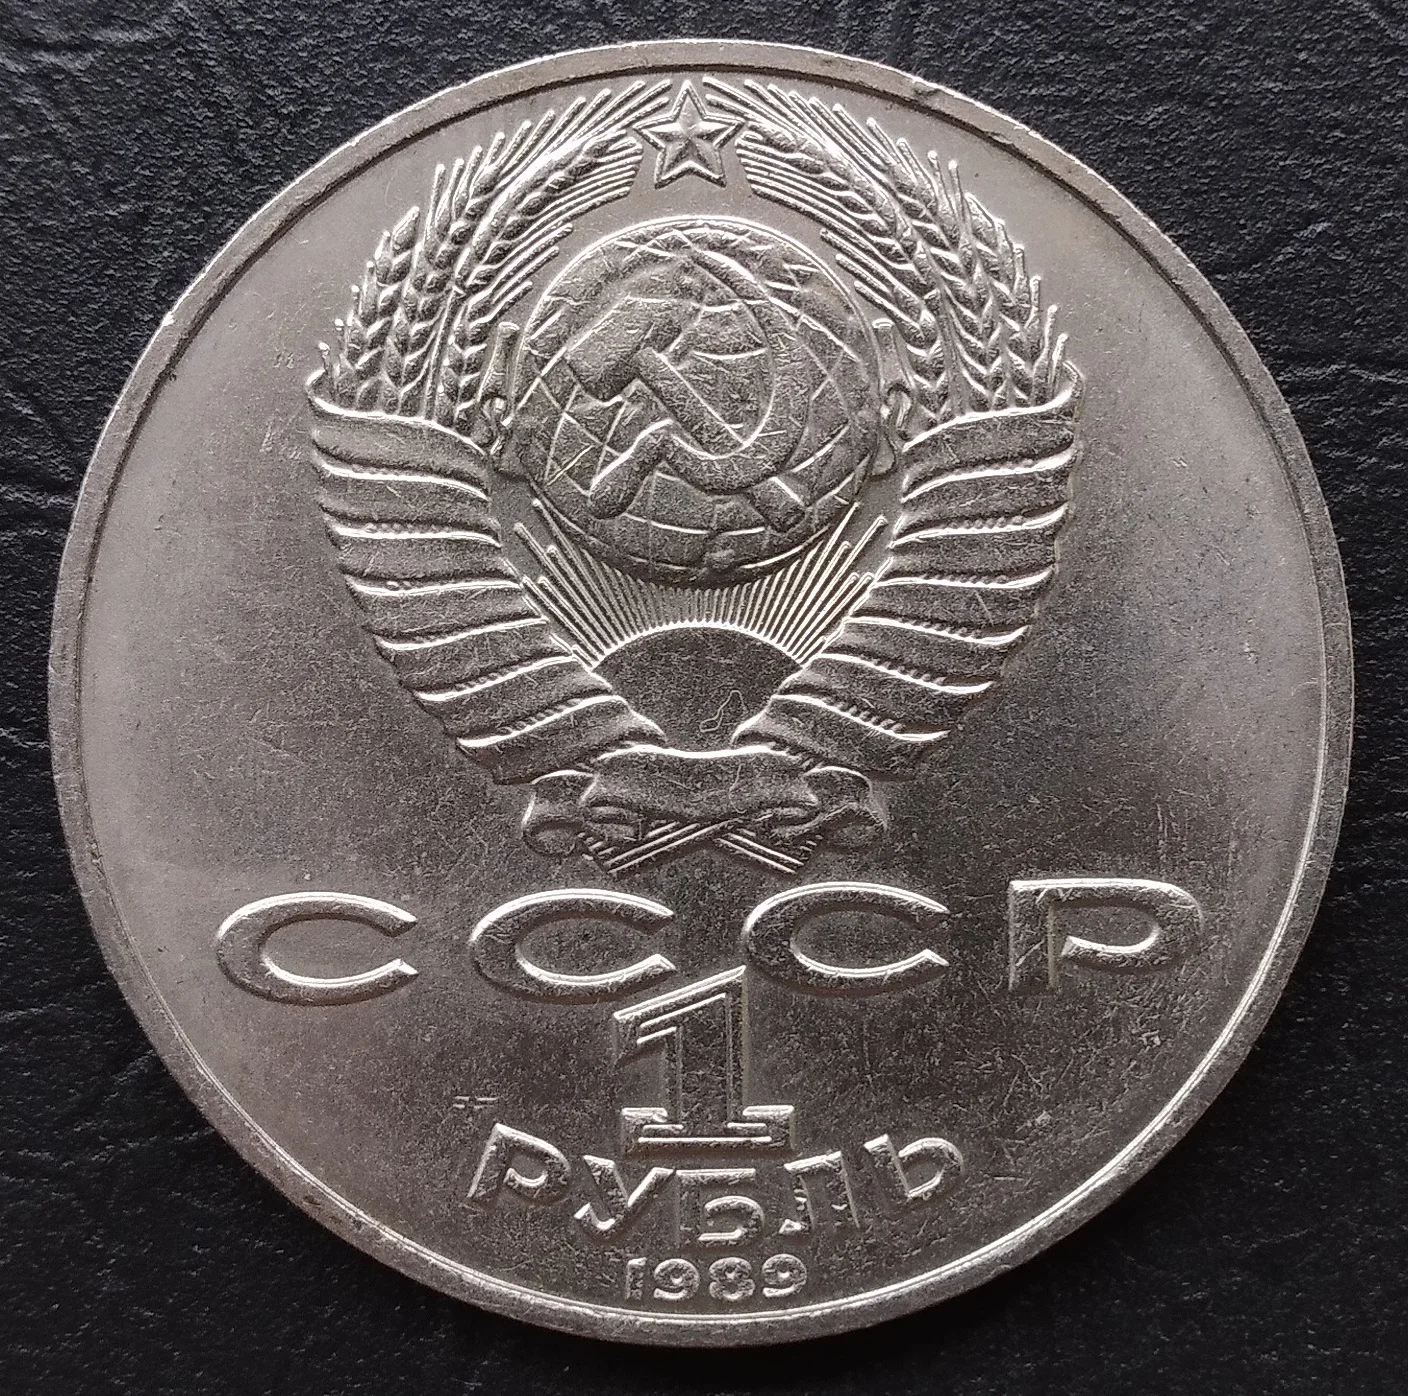 1 рубль жуков. 5 Рублей шайба. 1 Рубль СССР Пушкин 1799-1837 цена.